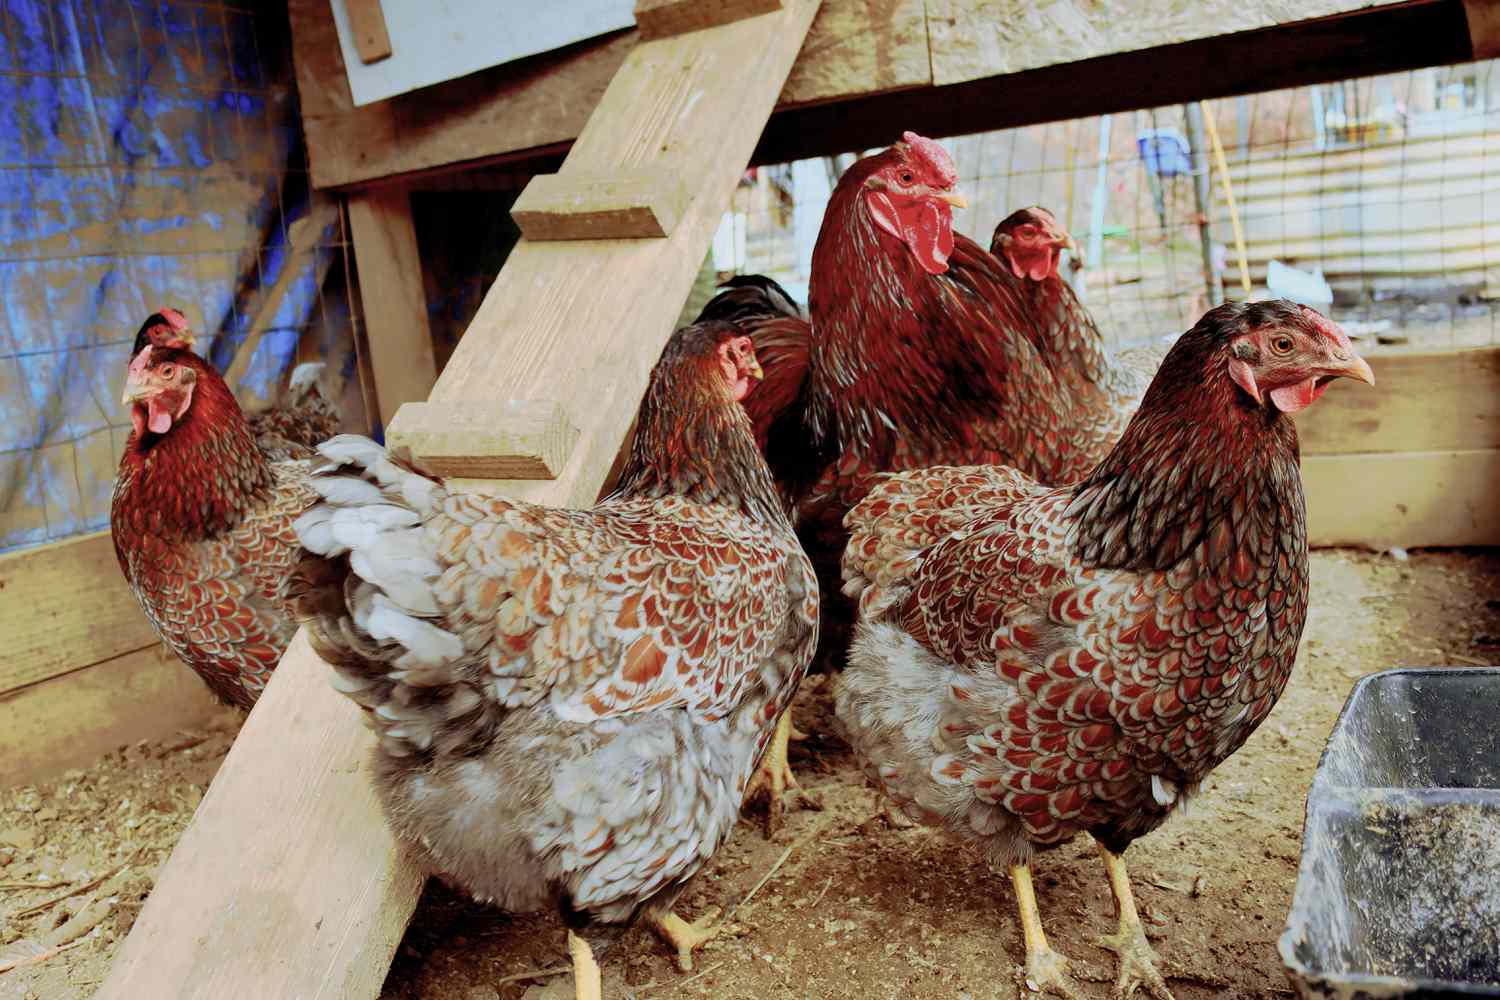 Braune Hühner im Stall unter dem angehobenen Laufsteg